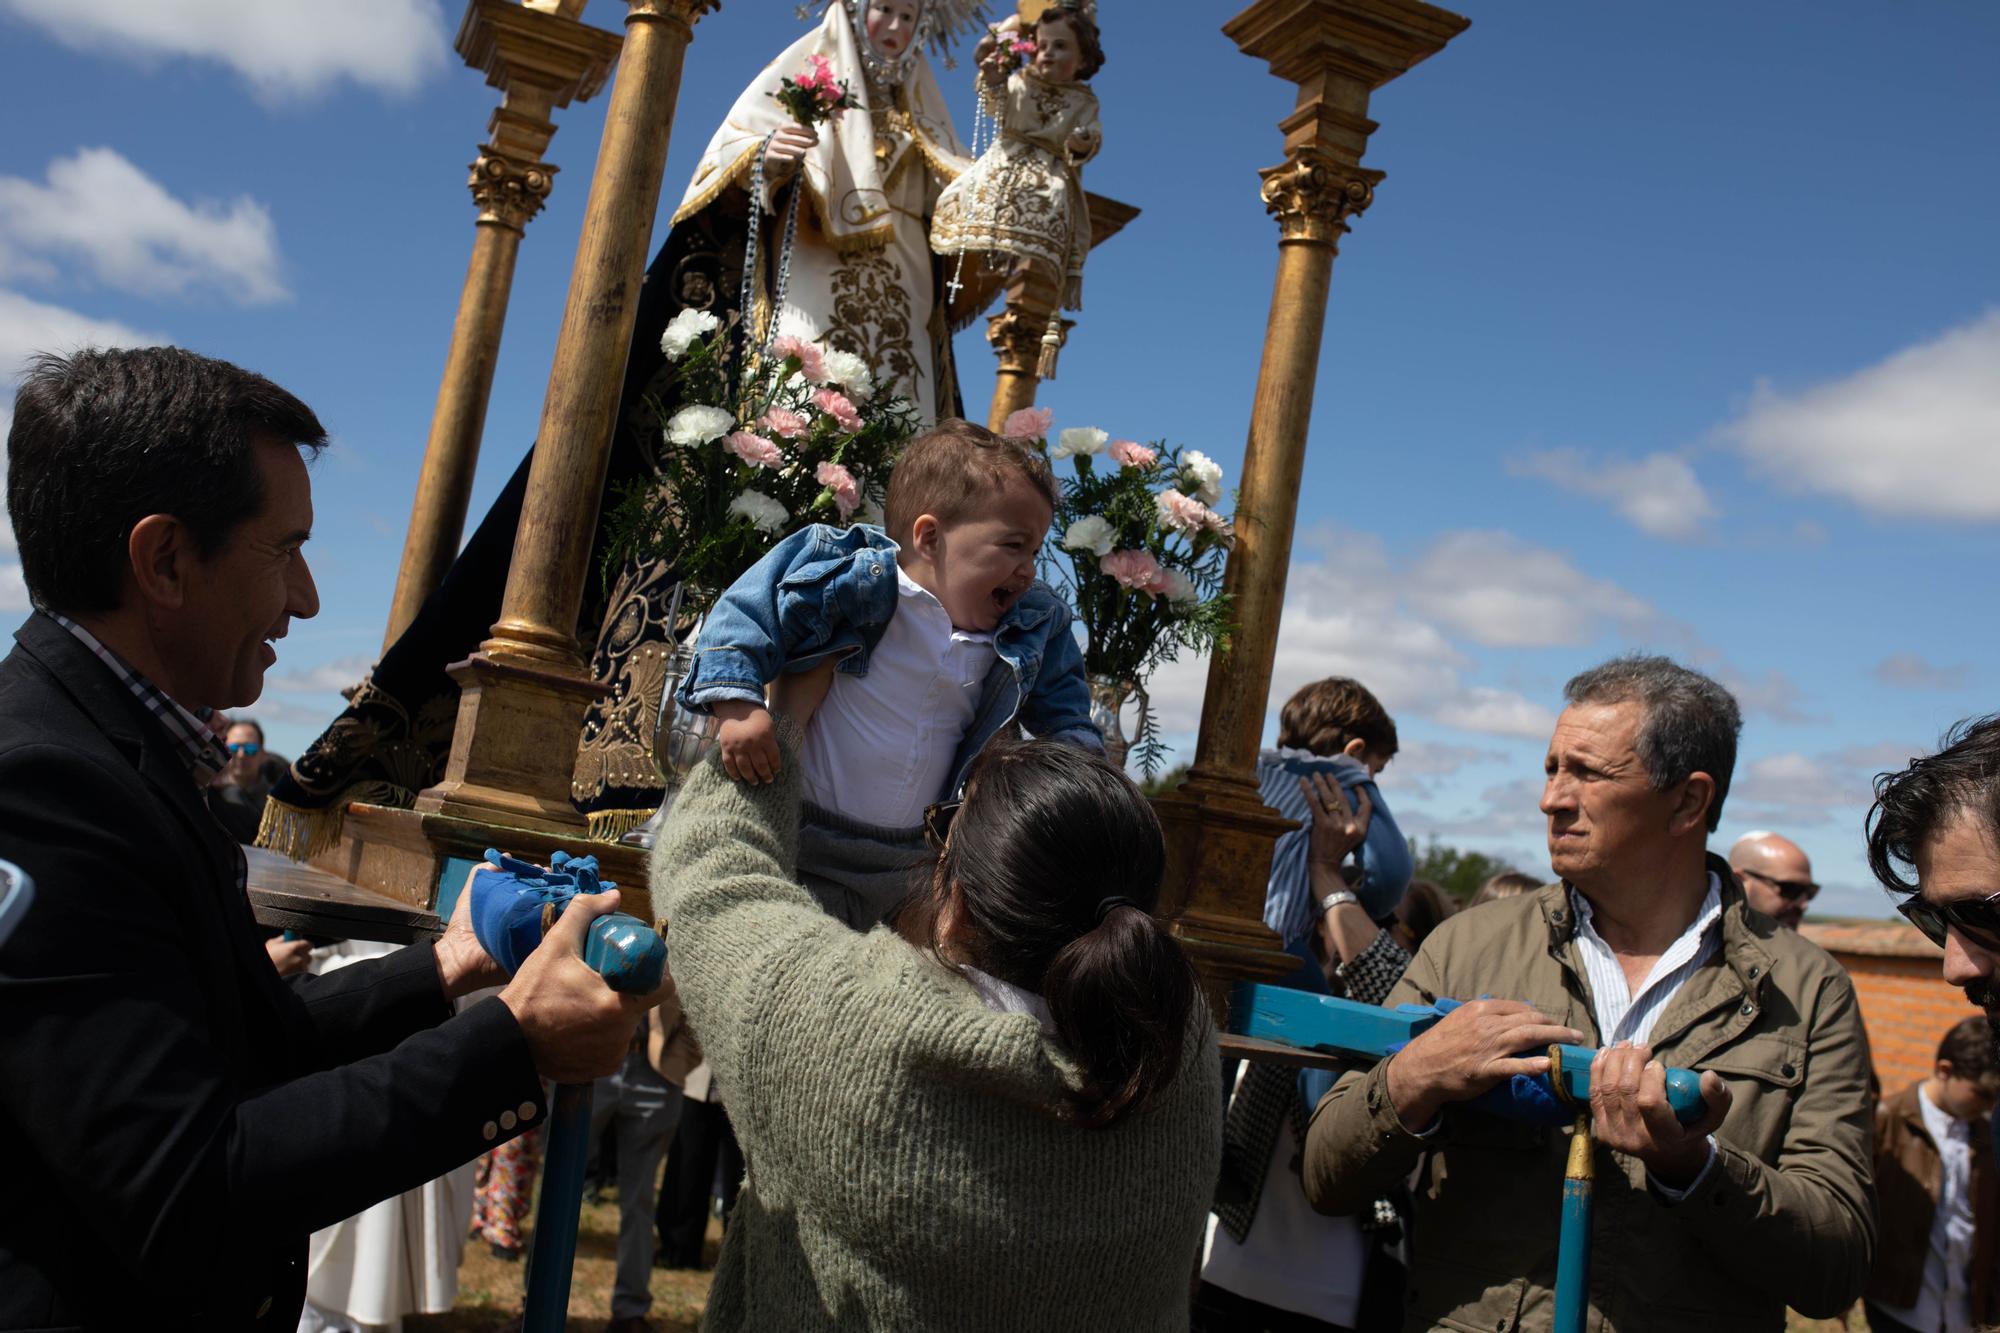 GALERIA | La romería de la Virgen del Olmo, en imágenes